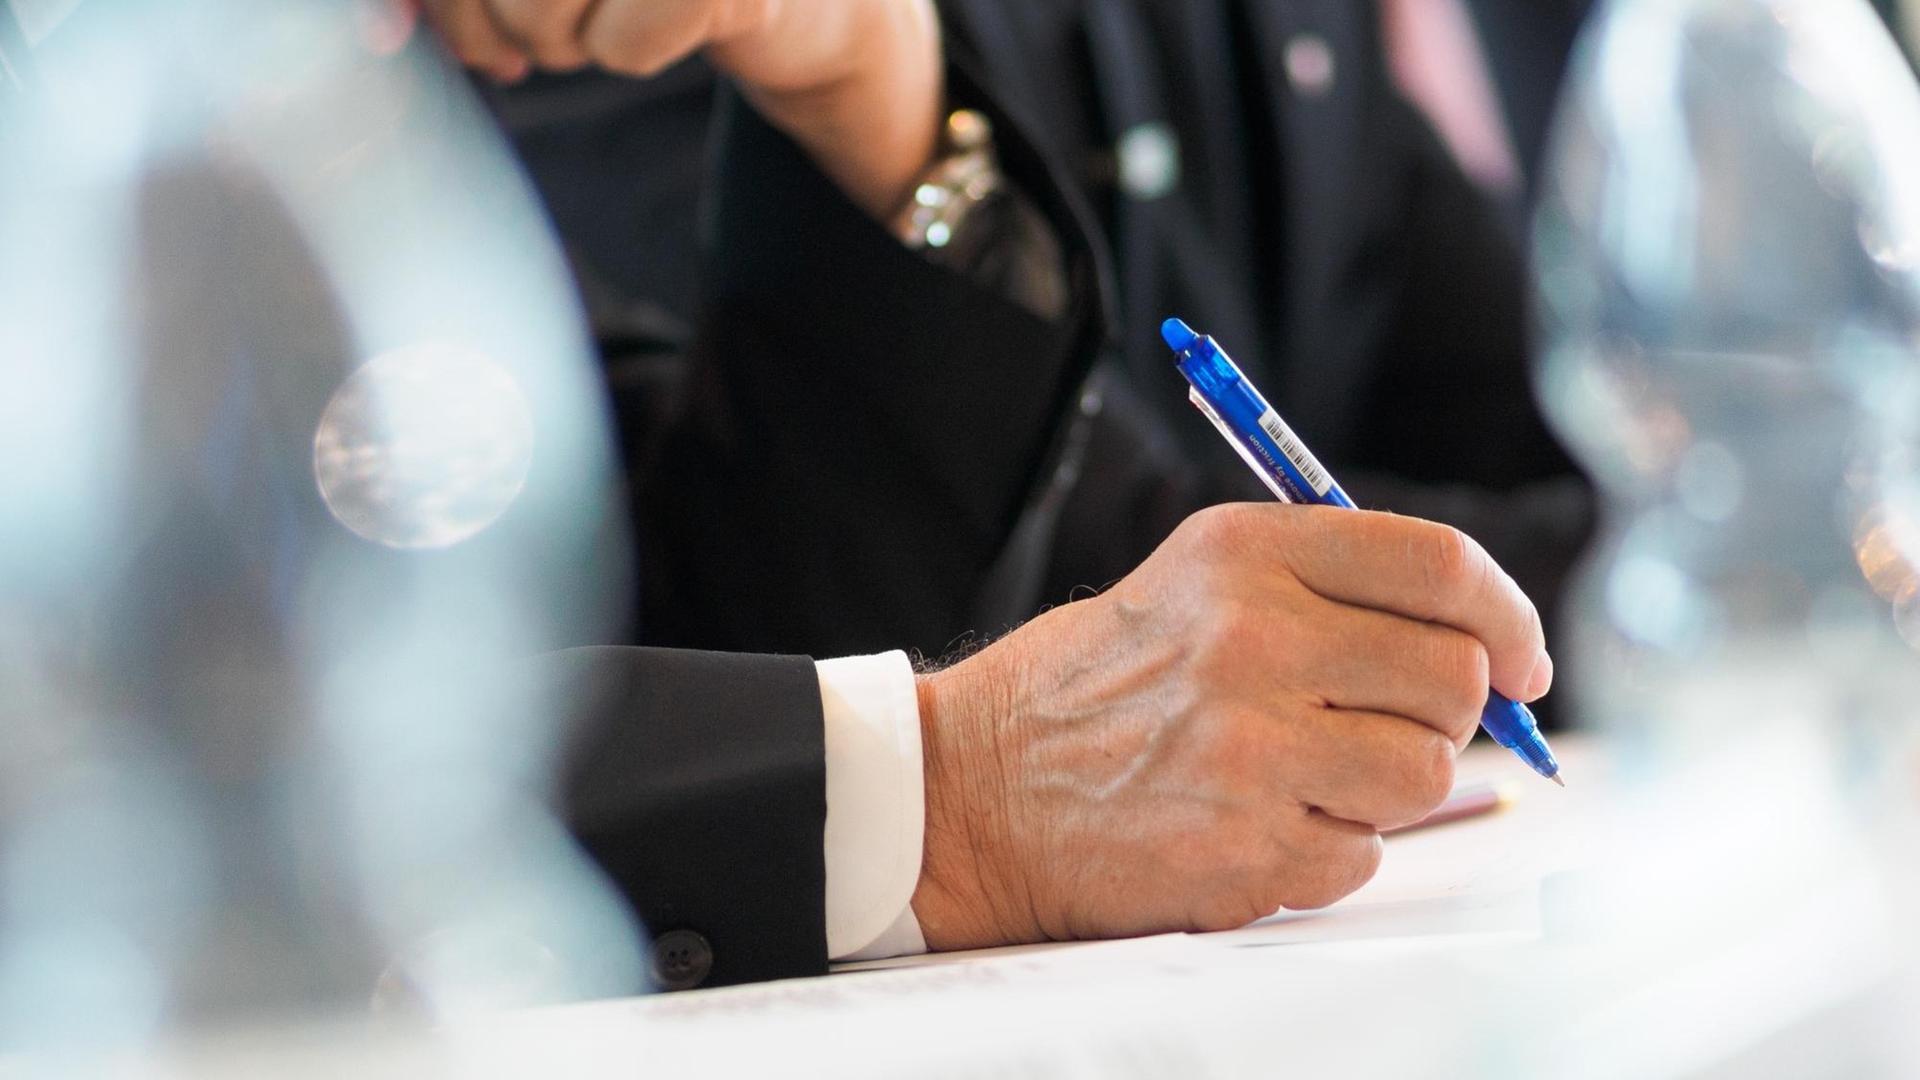 Ein Mann mit Anzug und Krawatte hält am 02.05.2017 in Nürnberg (Bayern) während einer Pressekonferenz einen Stift in der Hand.